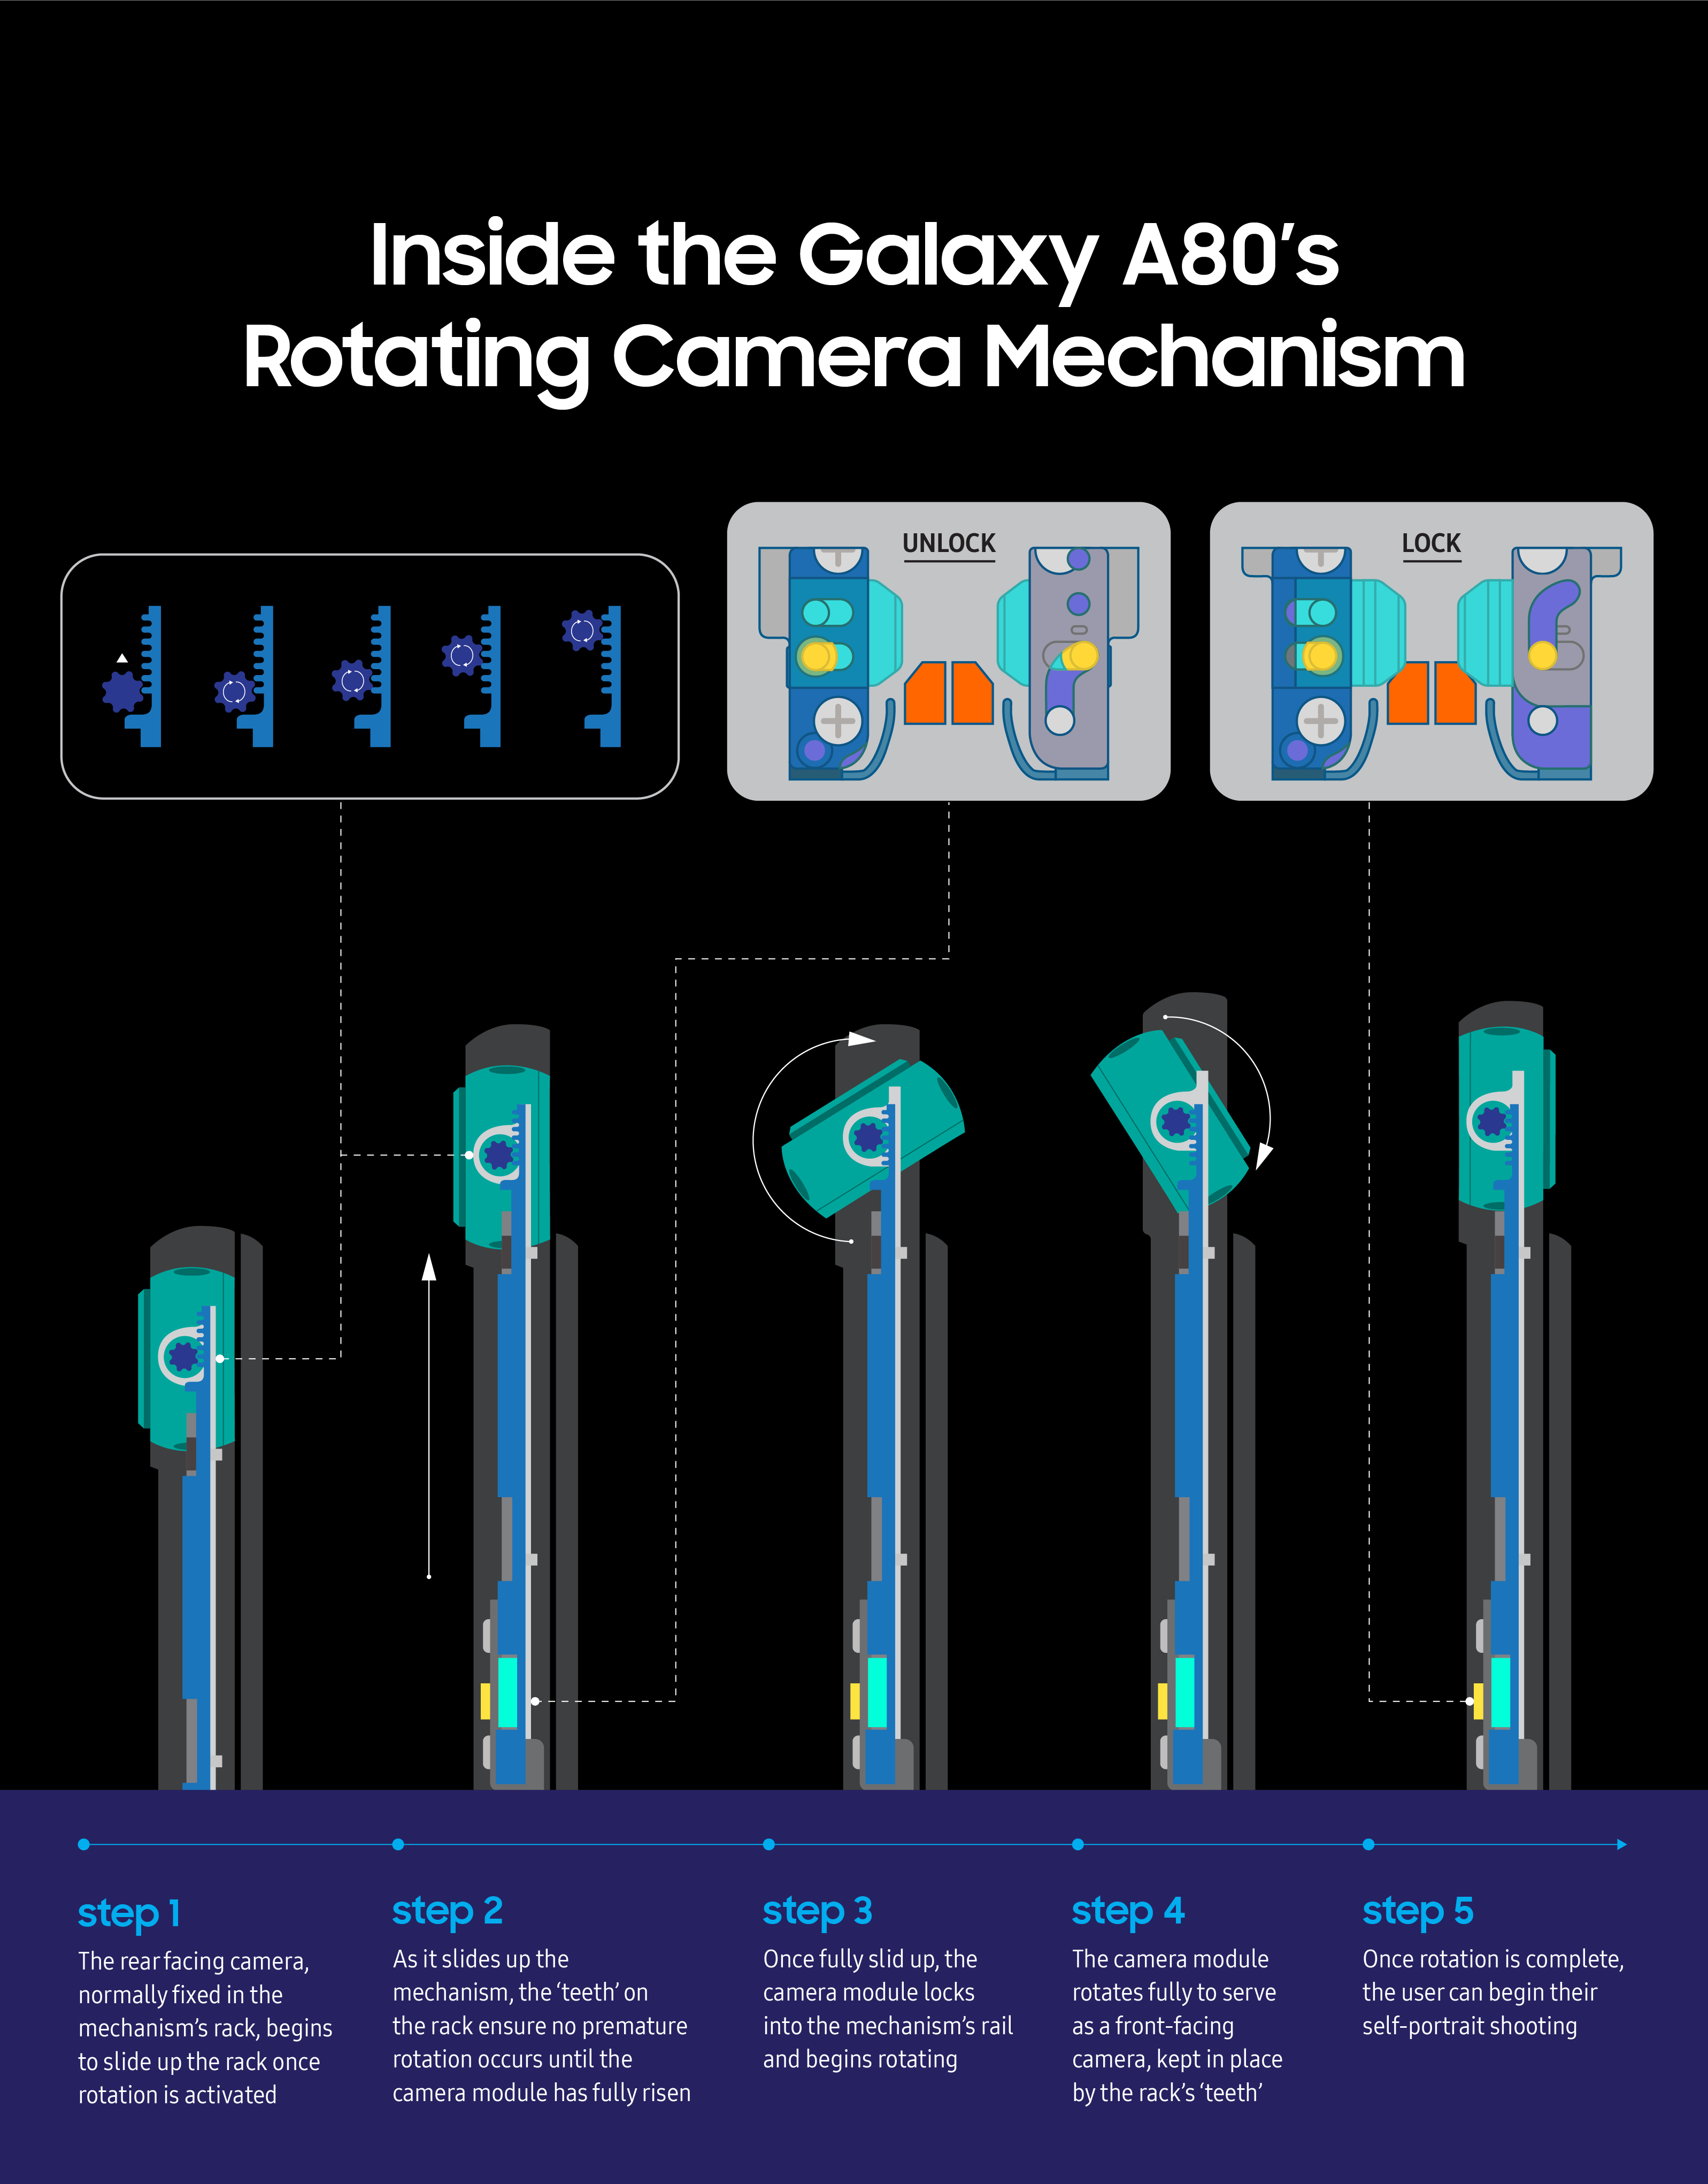 تحليل متعمق لكاميرا هاتف Galaxy A80 الثورية الدّوّارة من سامسونج